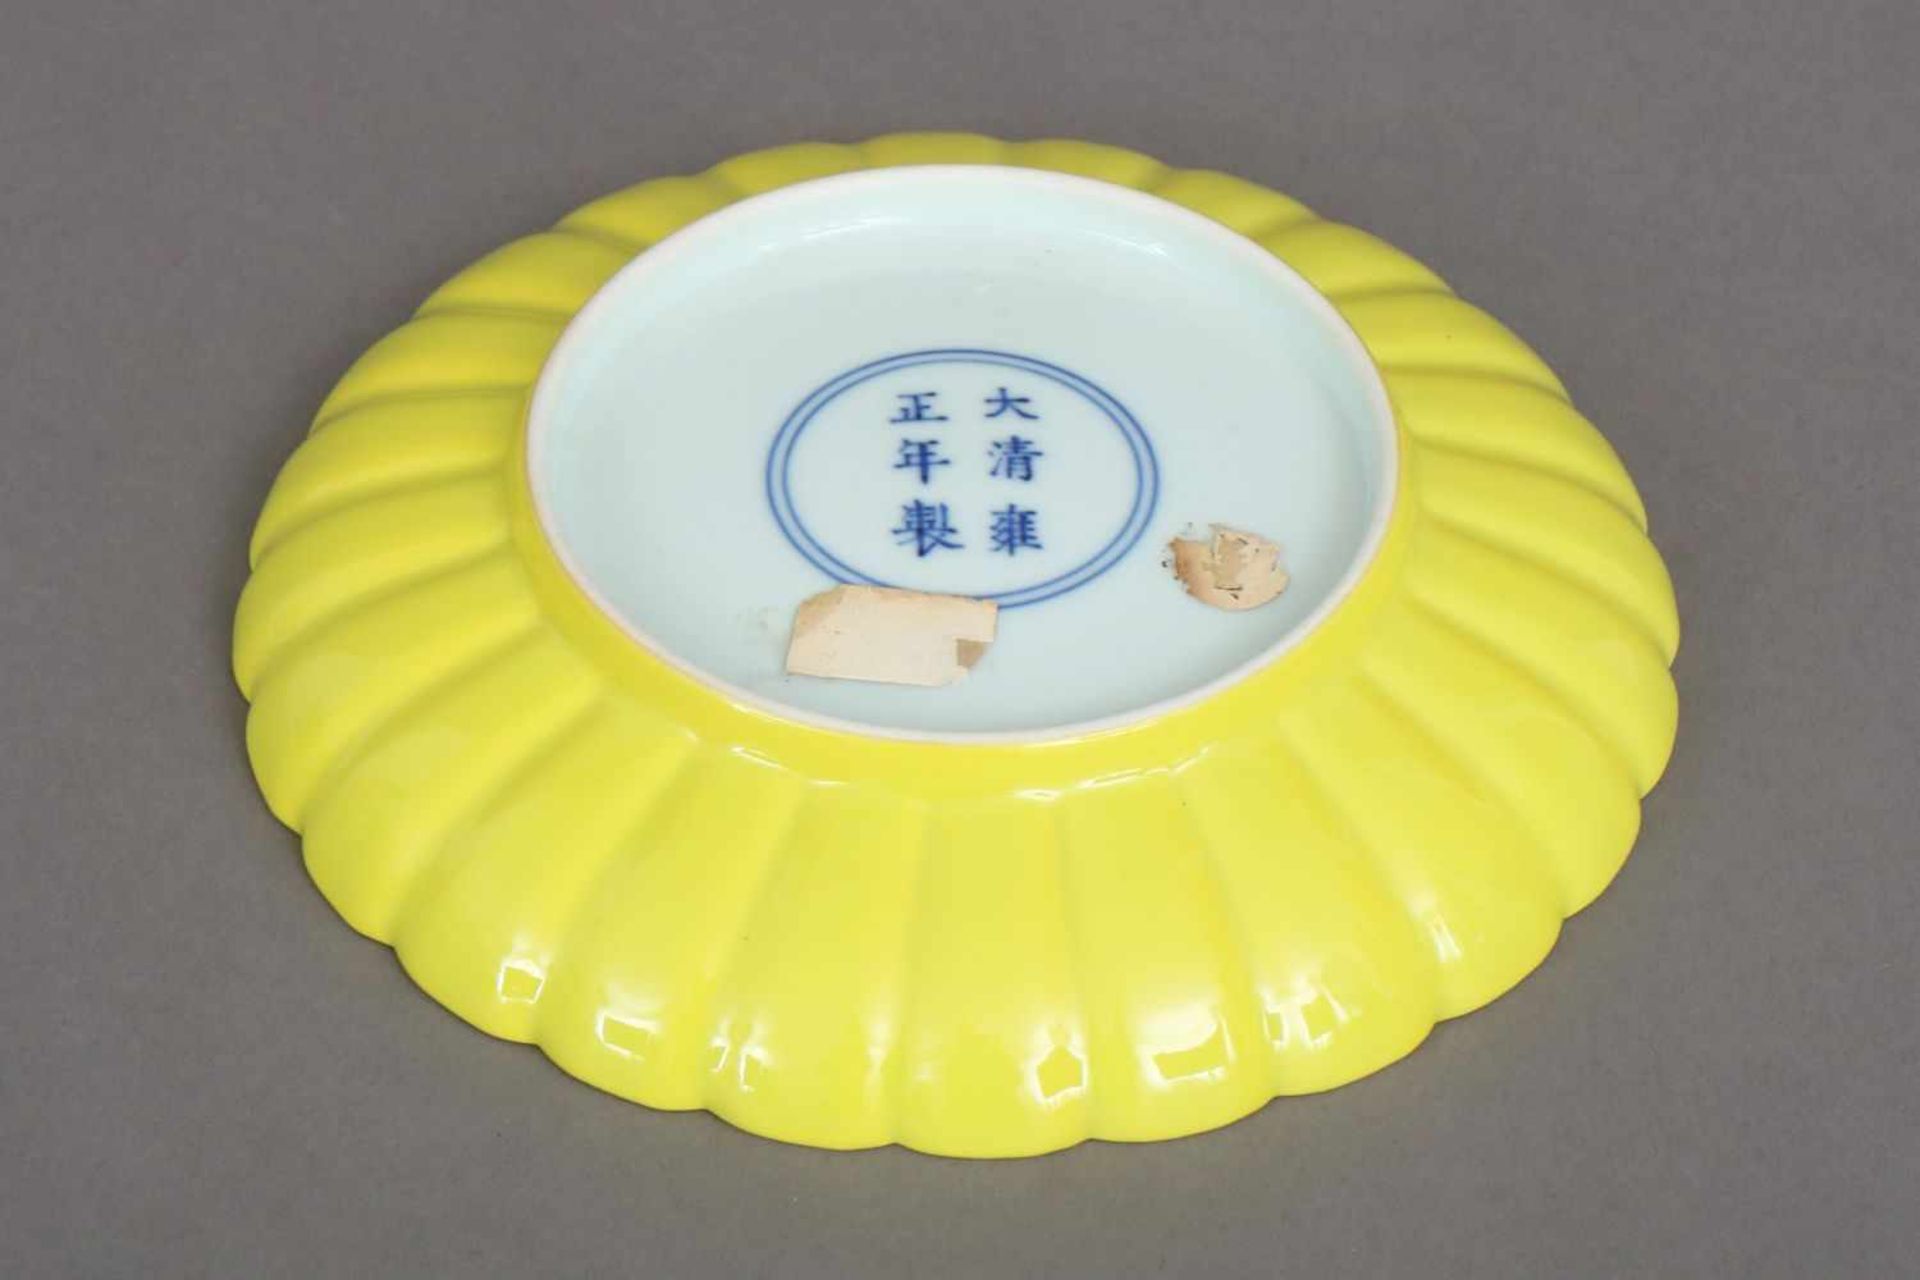 Chinesischer Porzellanteller mit kaisergelbem Fond - Image 2 of 3